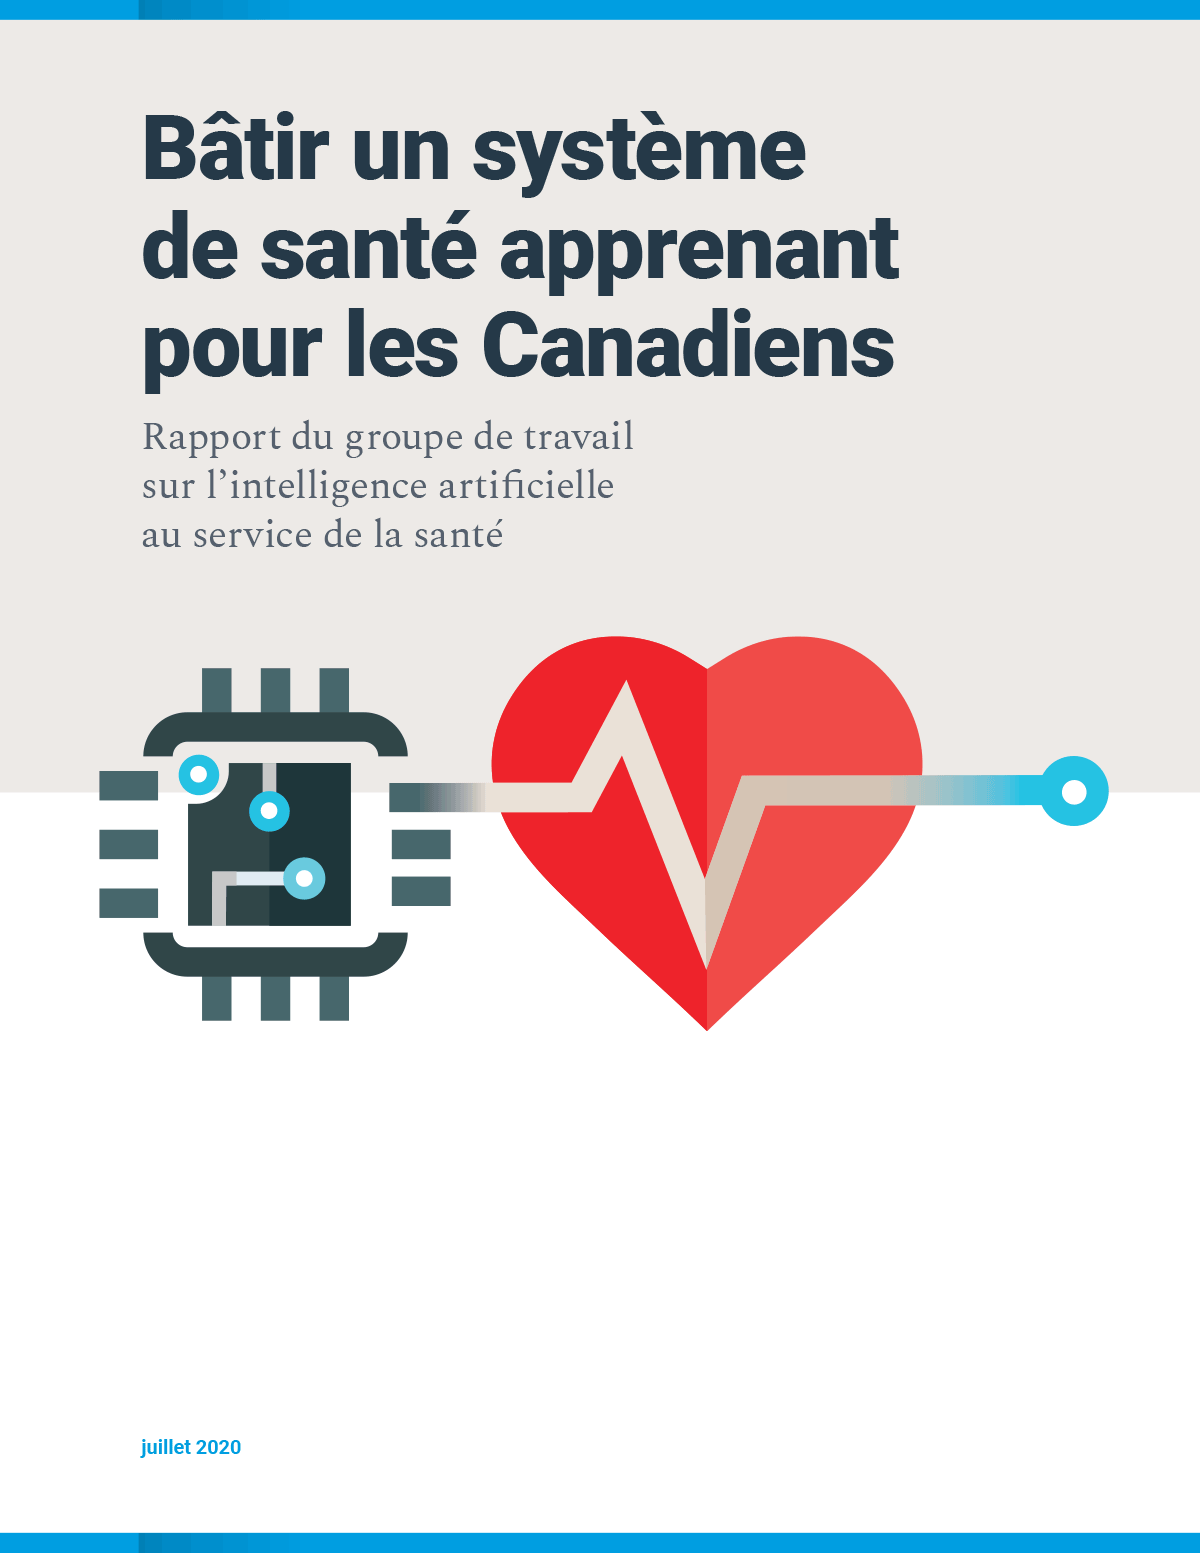 Bâtir un système de santé apprenant pour les Canadiens : Rapport du groupe de travail sur l’IA au service de la santé